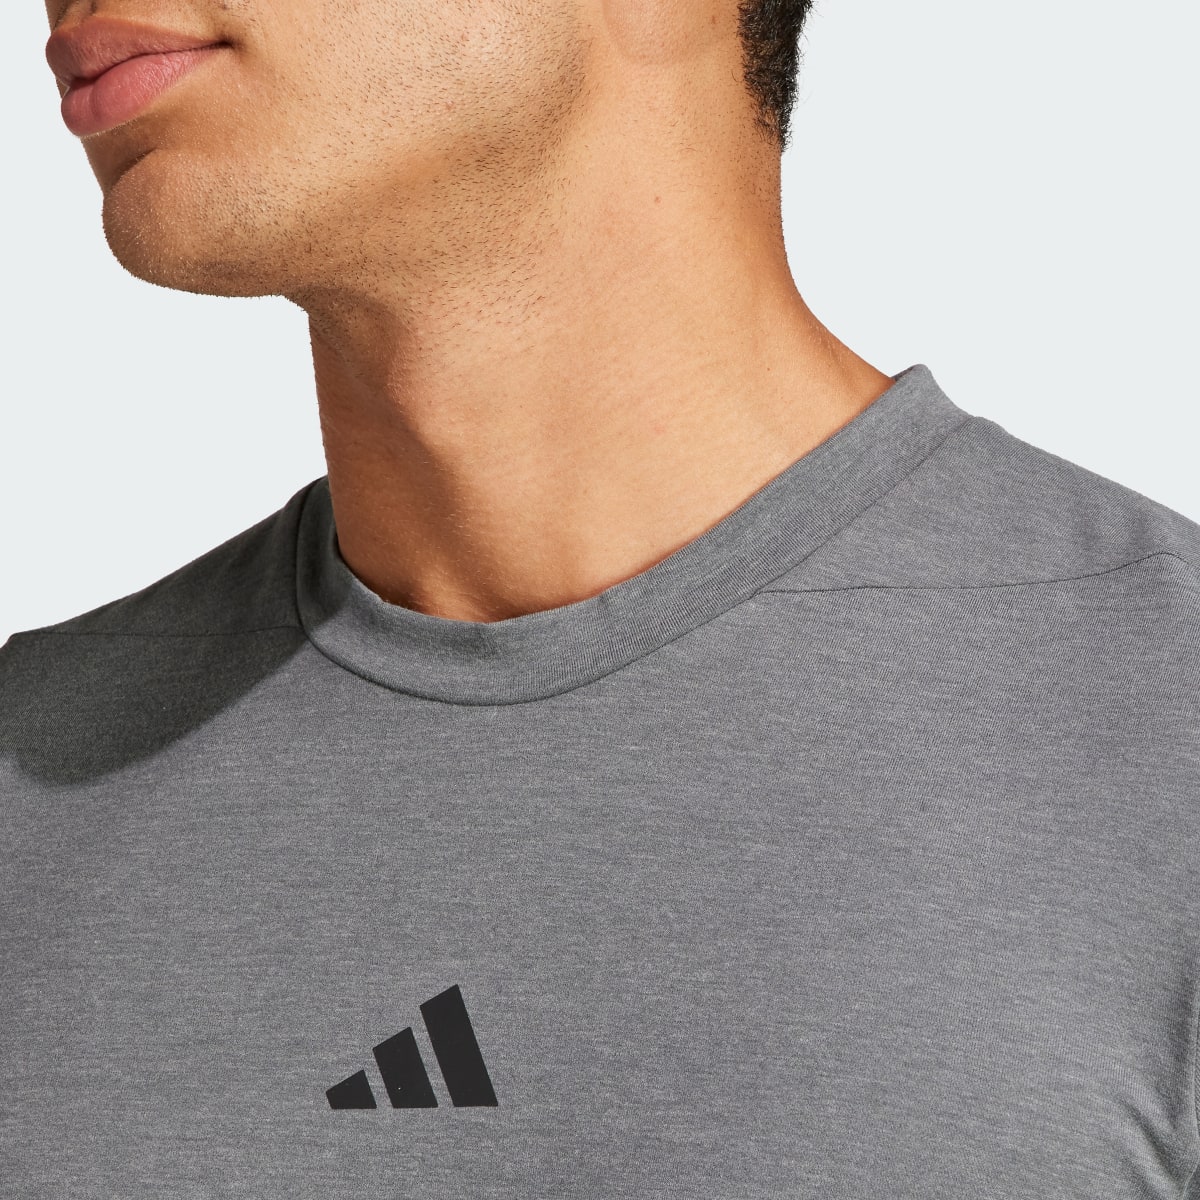 Adidas Camiseta Designed for Training Workout. 7